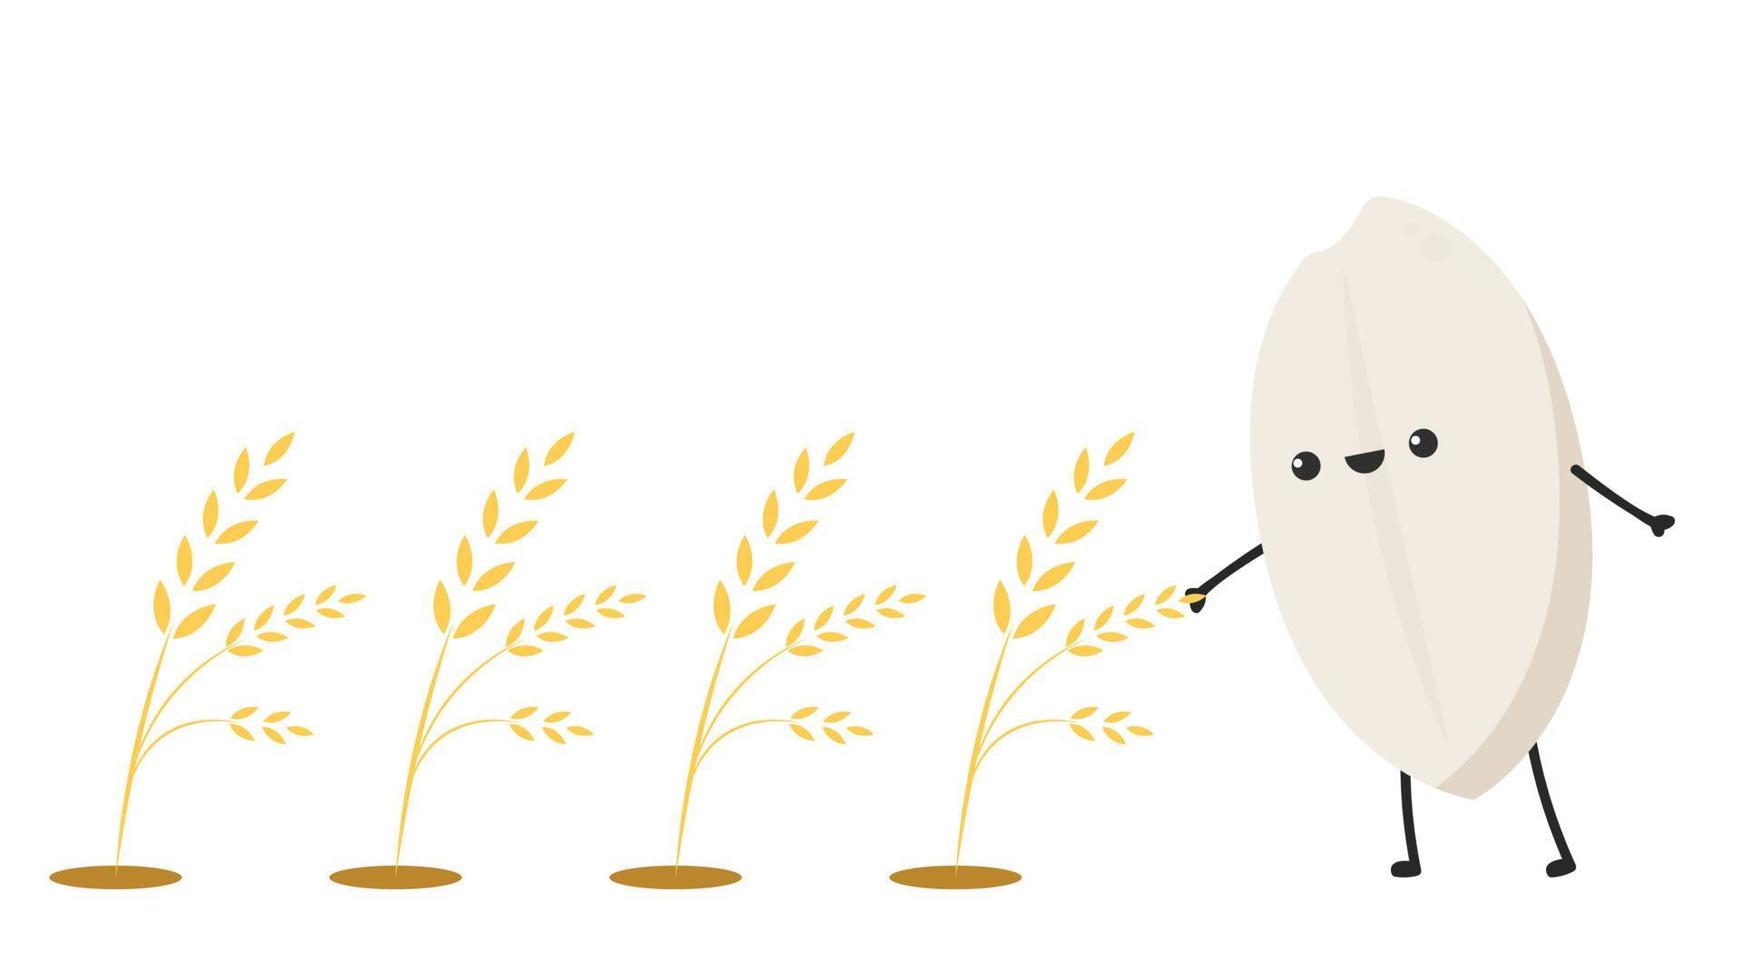 Reis-Charakter-Design. Reisvektor auf weißem Hintergrund. Reissamen. vektor